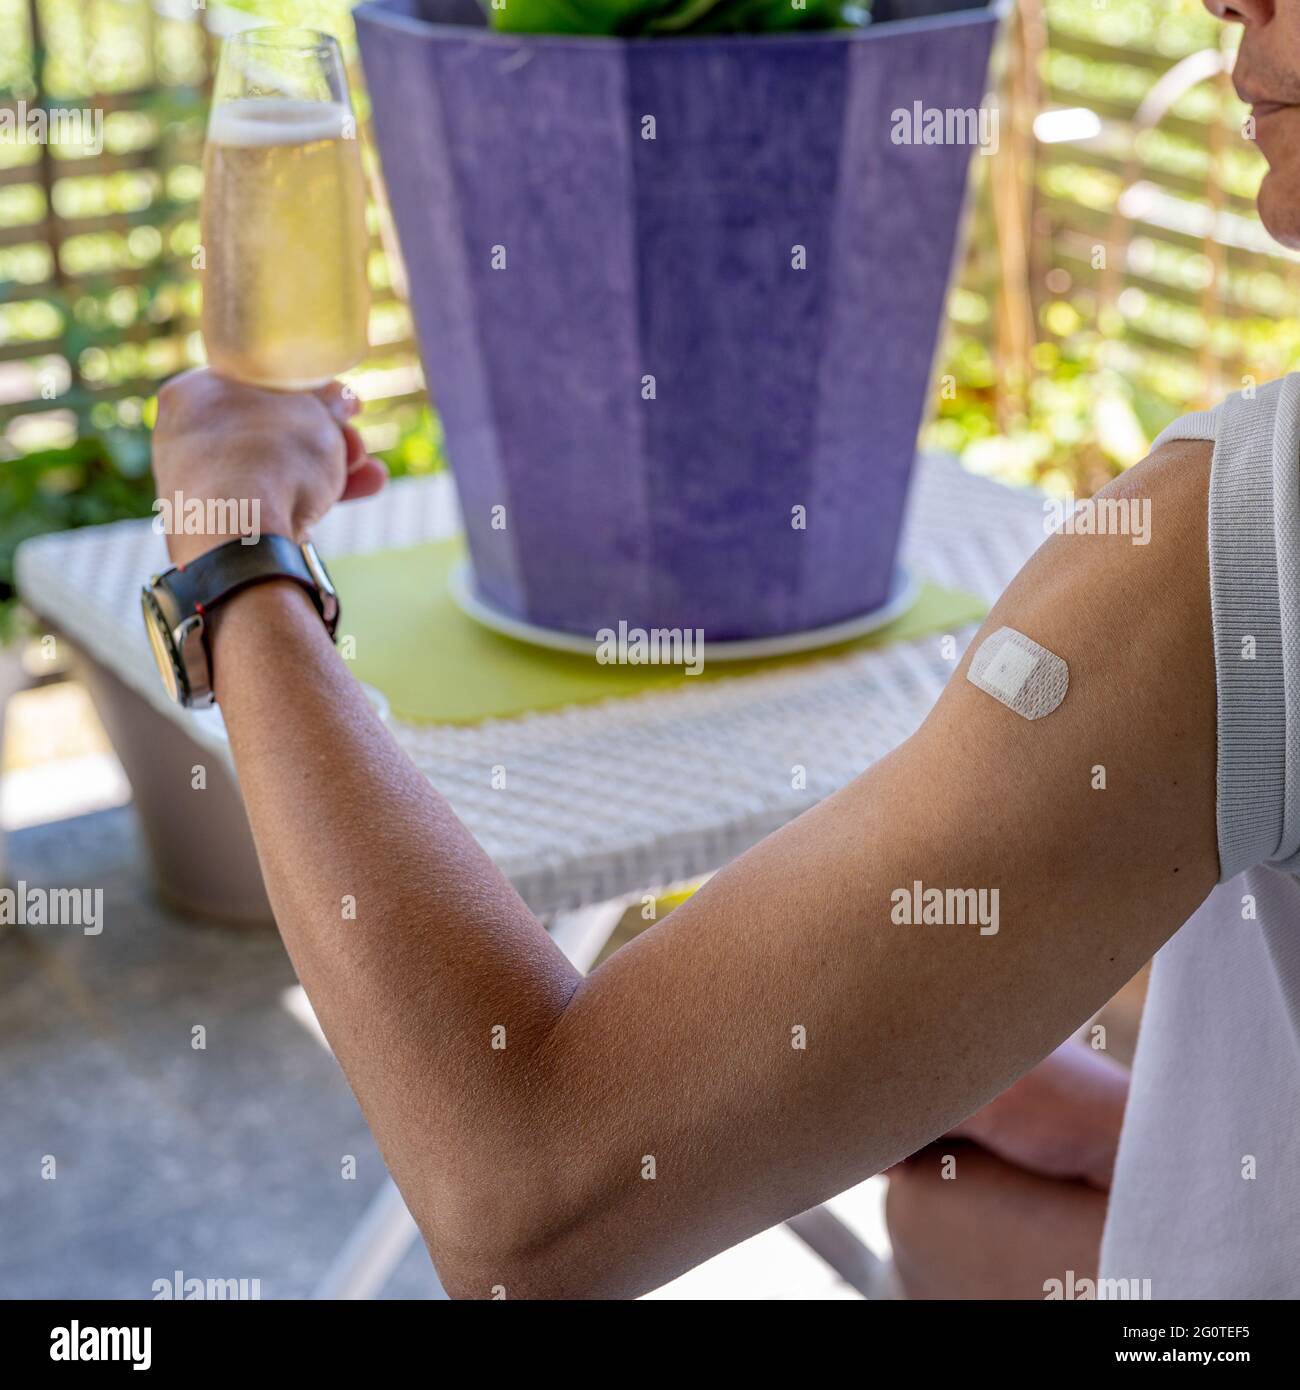 Un homme asiatique montre du plâtre sur l'épaule après le vaccin contre le coronavirus. Vaccination, immunisation, concept de prévention de la grippe. Obtenir le vaccin Covid-19. Ma Banque D'Images